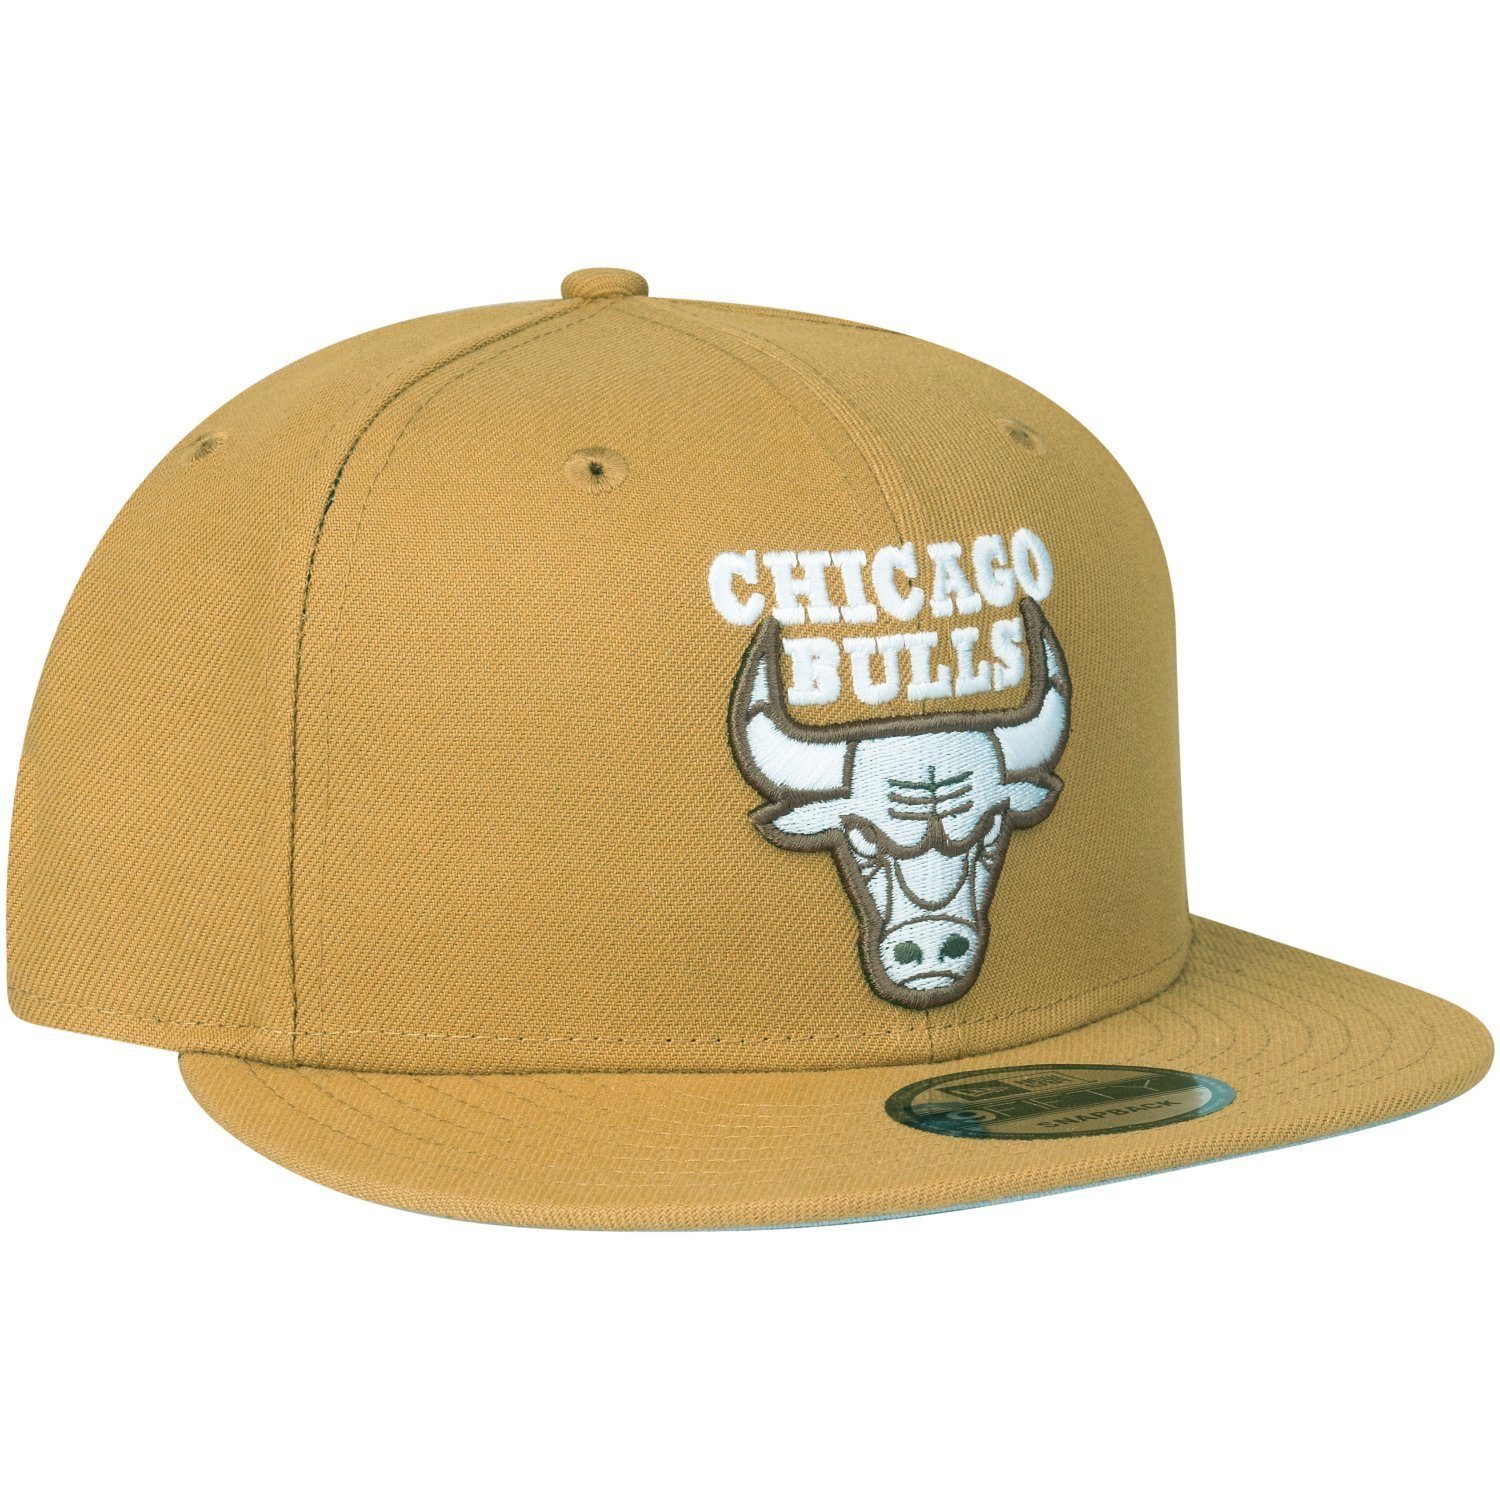 New Era Bulls Cap panama II Tan Panama Chicago 9Fifty Snapback